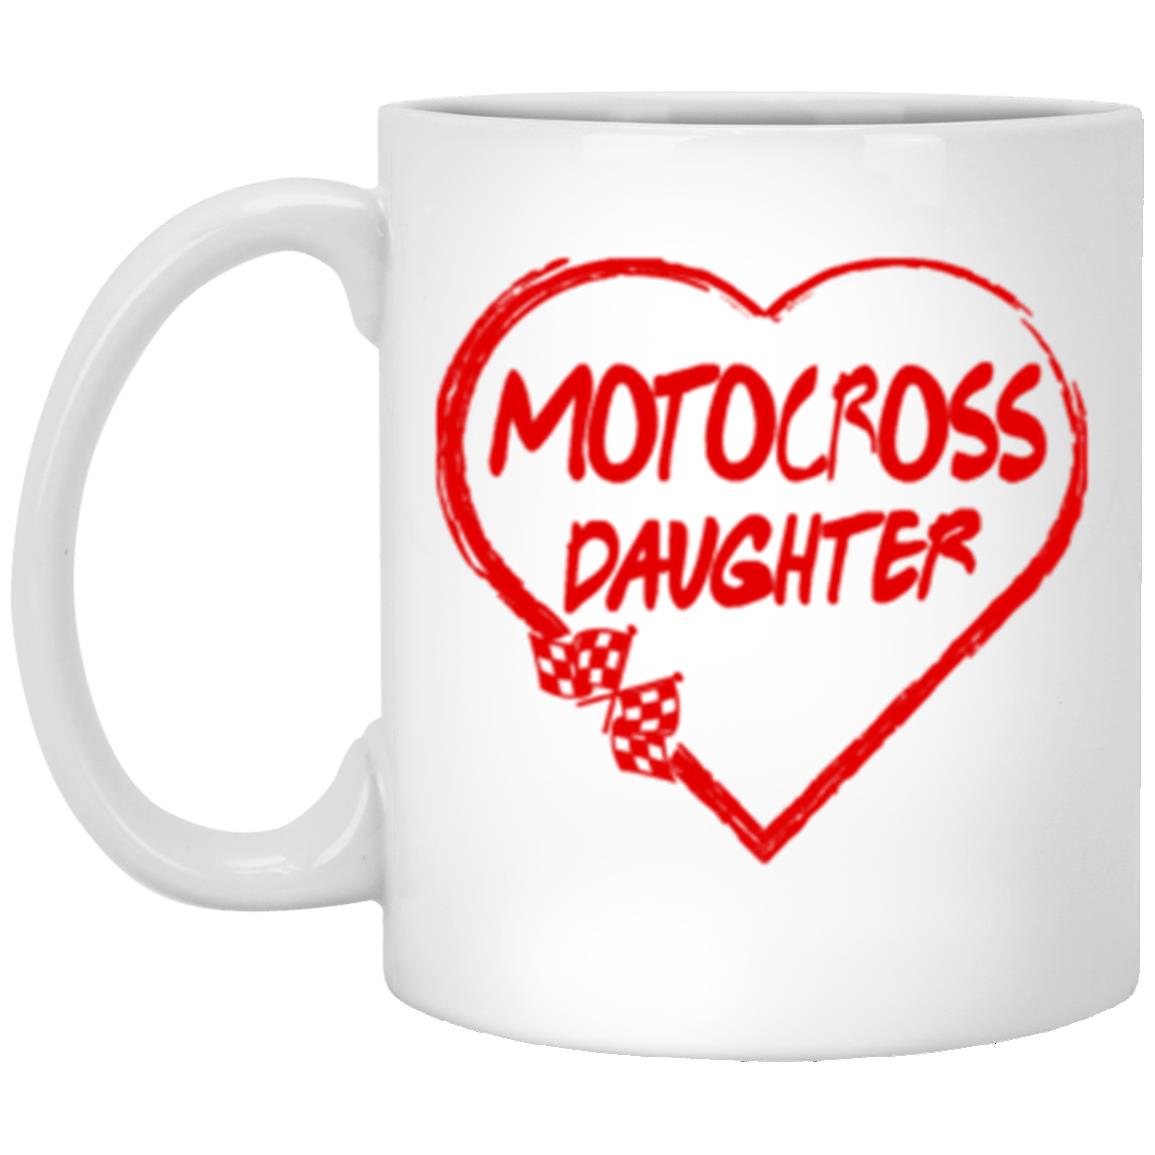 Motocross Daughter Heart 11 oz. White Mug